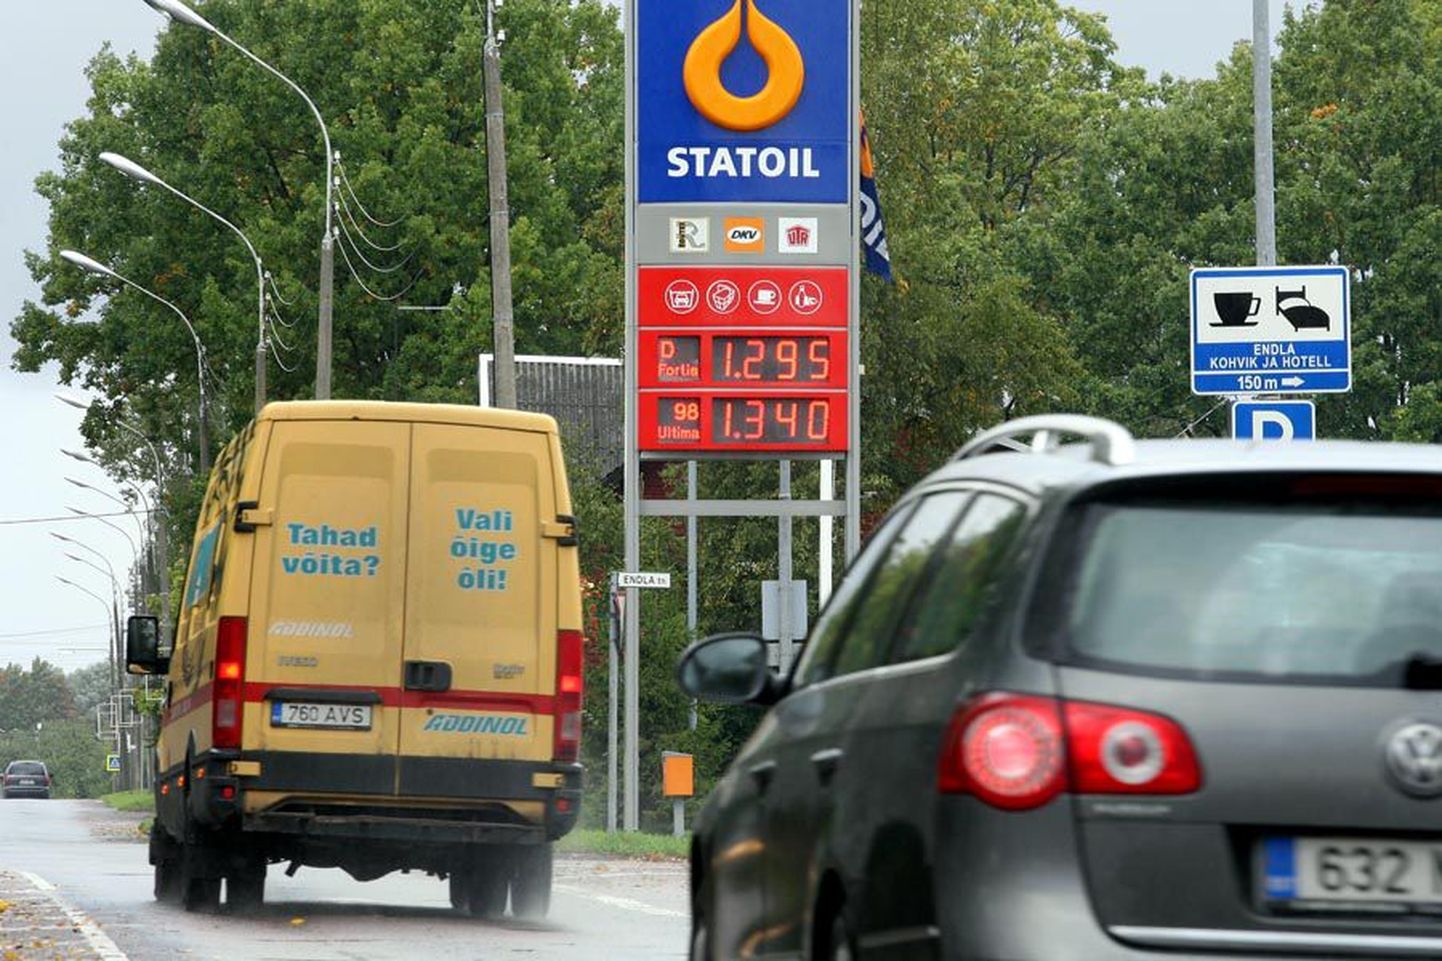 Viljandis Statoili teenindusjaamas maksis kalleim kütus, bensiin 98 Ultima eile pärast hinnatõusu 1.34 eurot ehk 20.97 krooni.